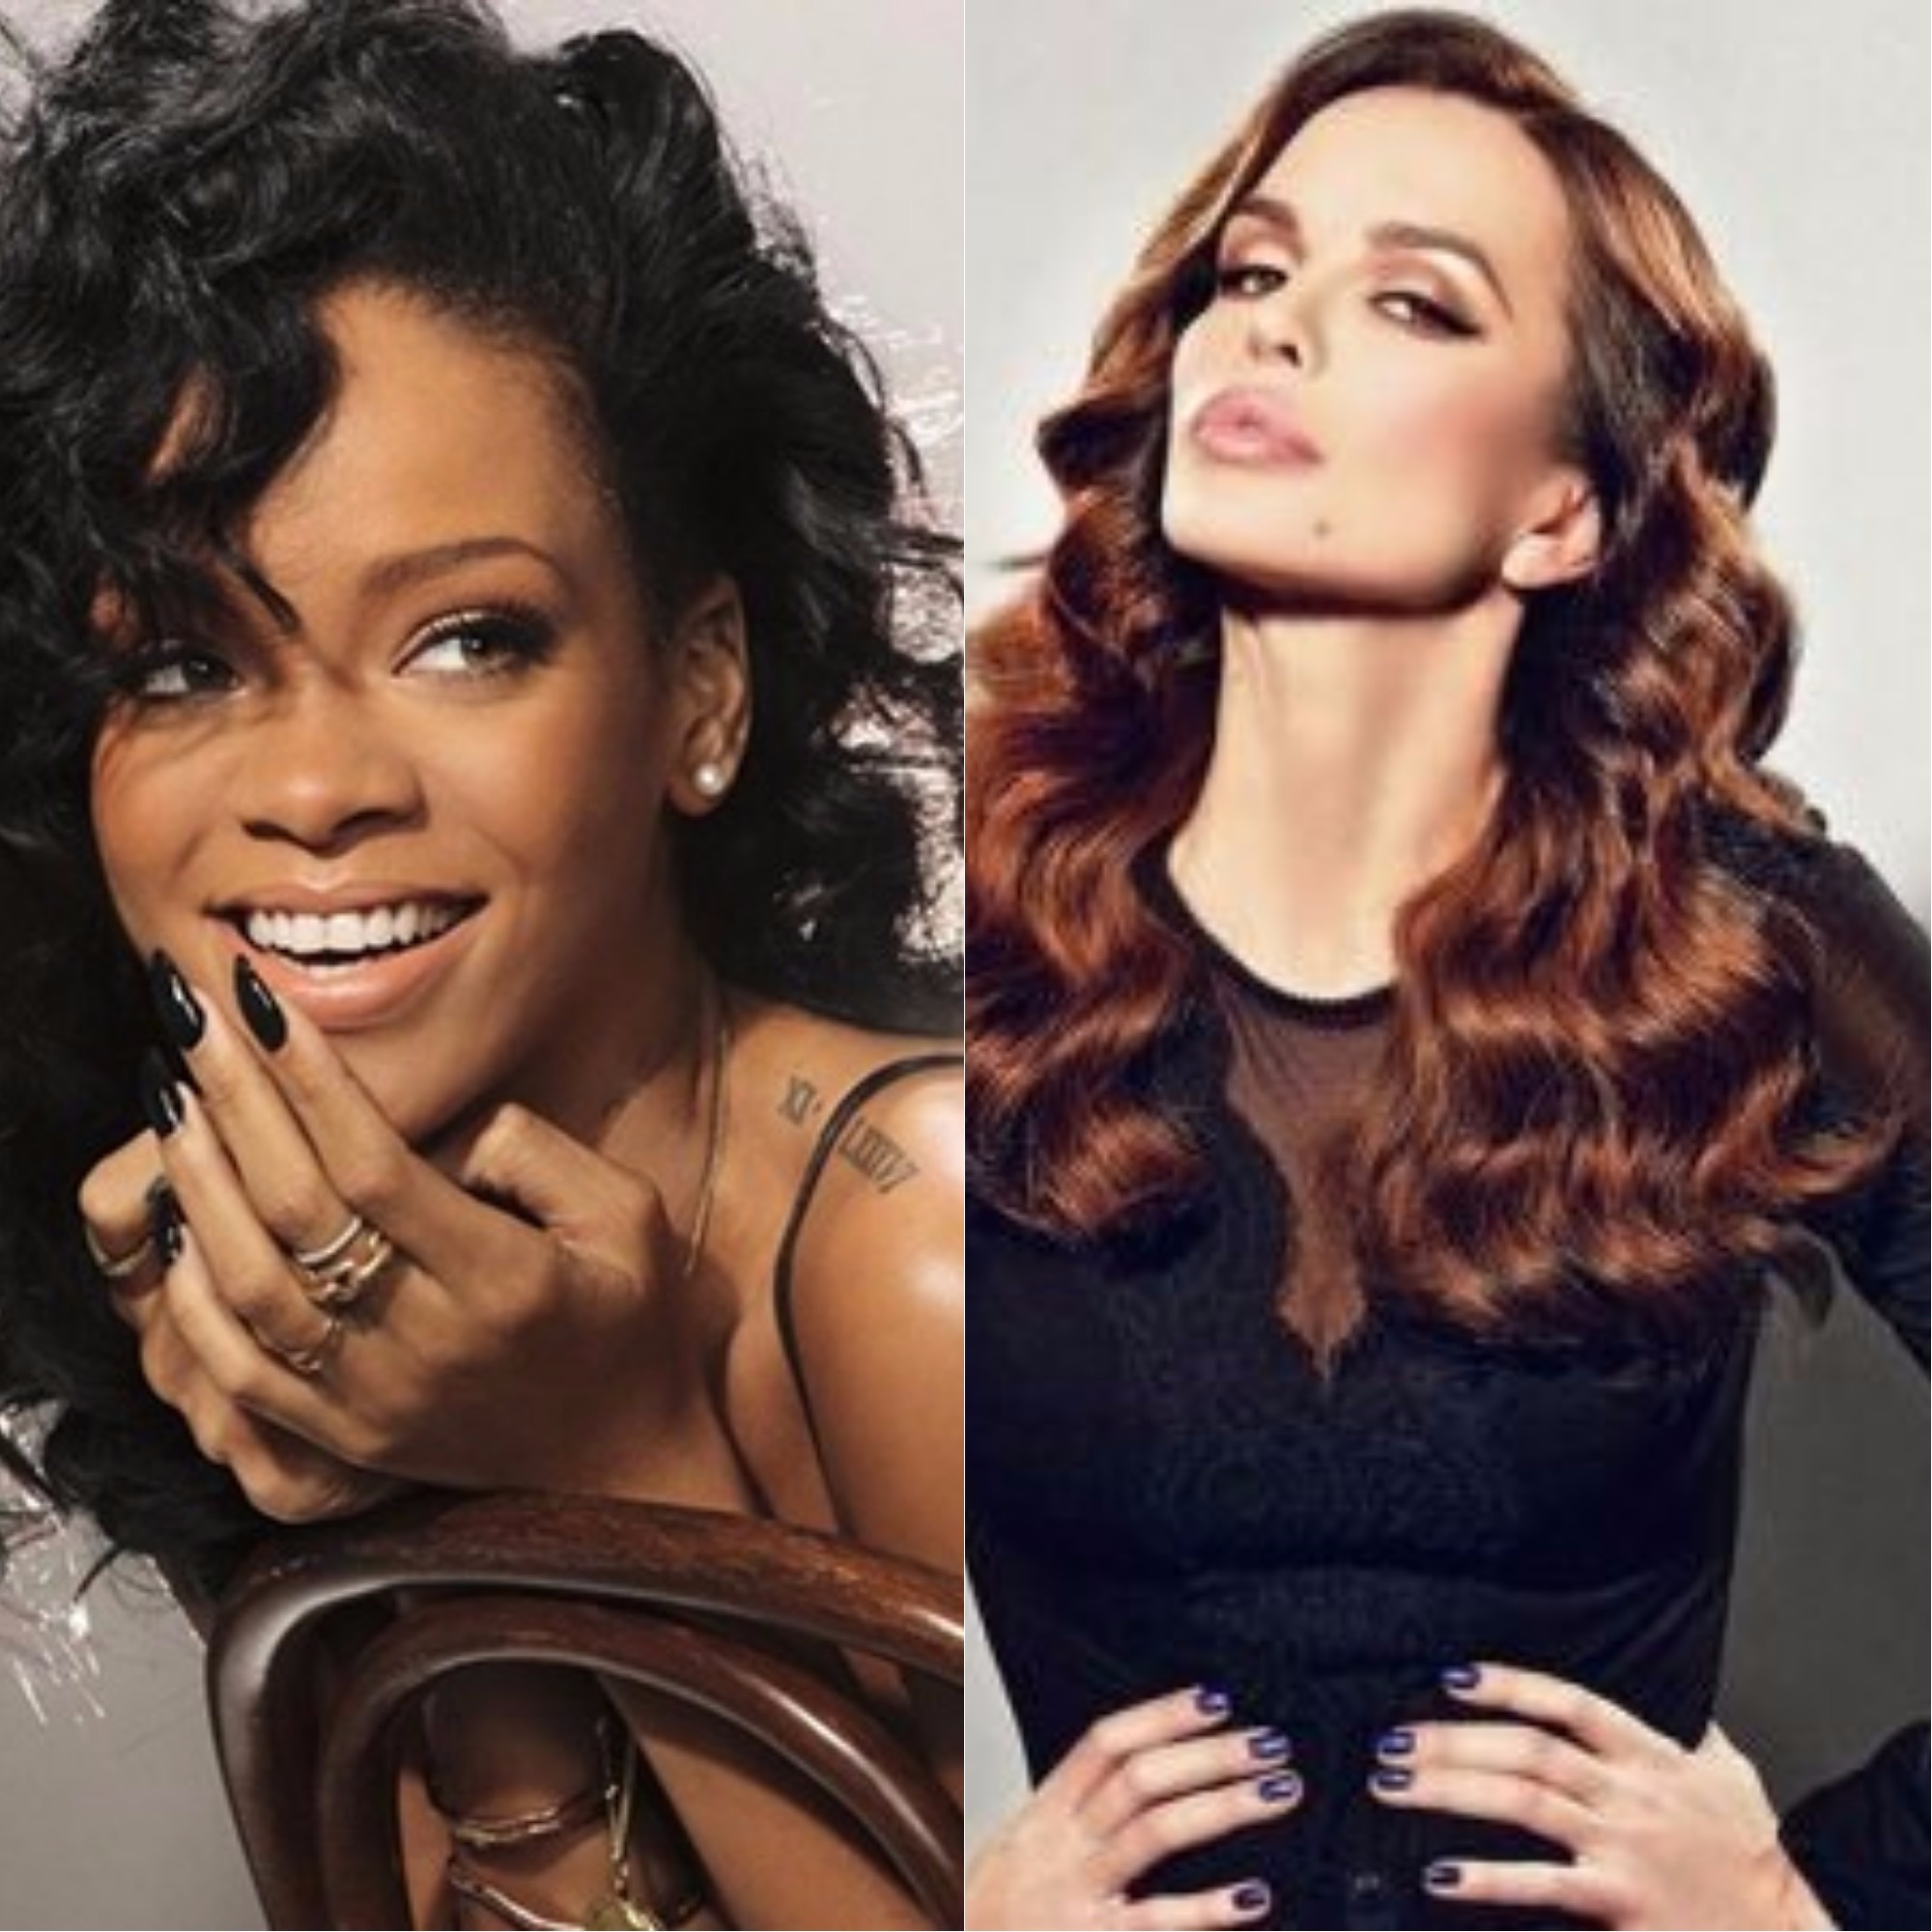  Severina "Sekunde" vs Rihanna "We found love"